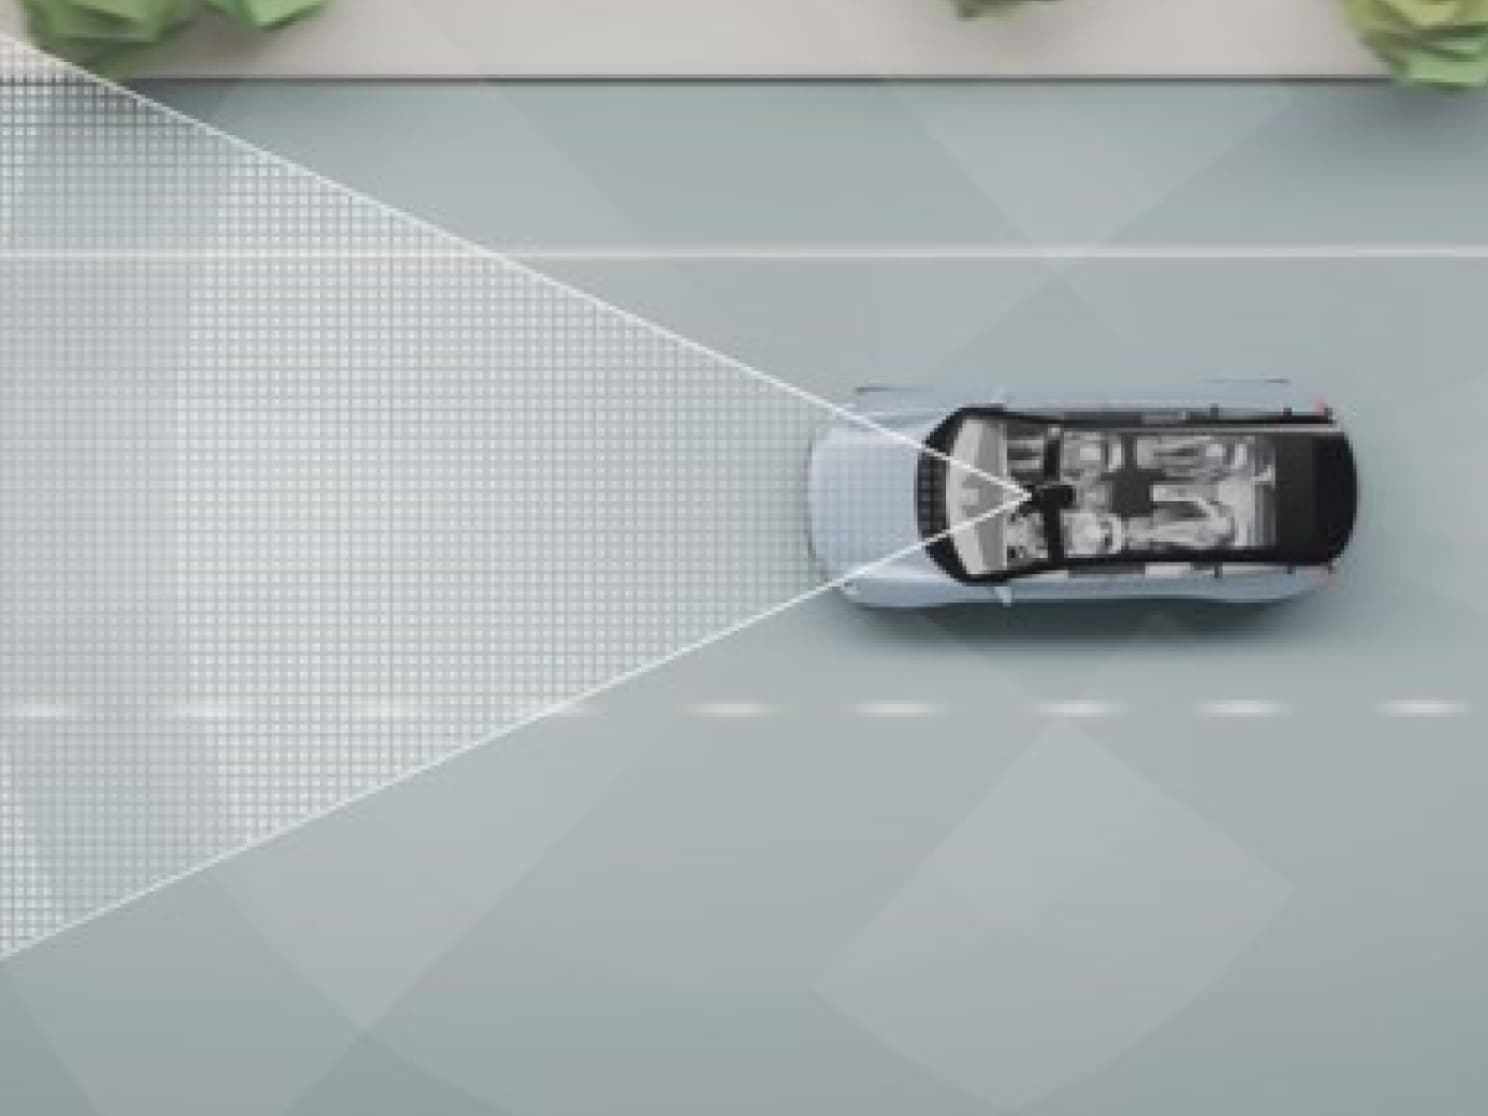 Una riproduzione digitale di un'auto su una strada con linee e altri oggetti.